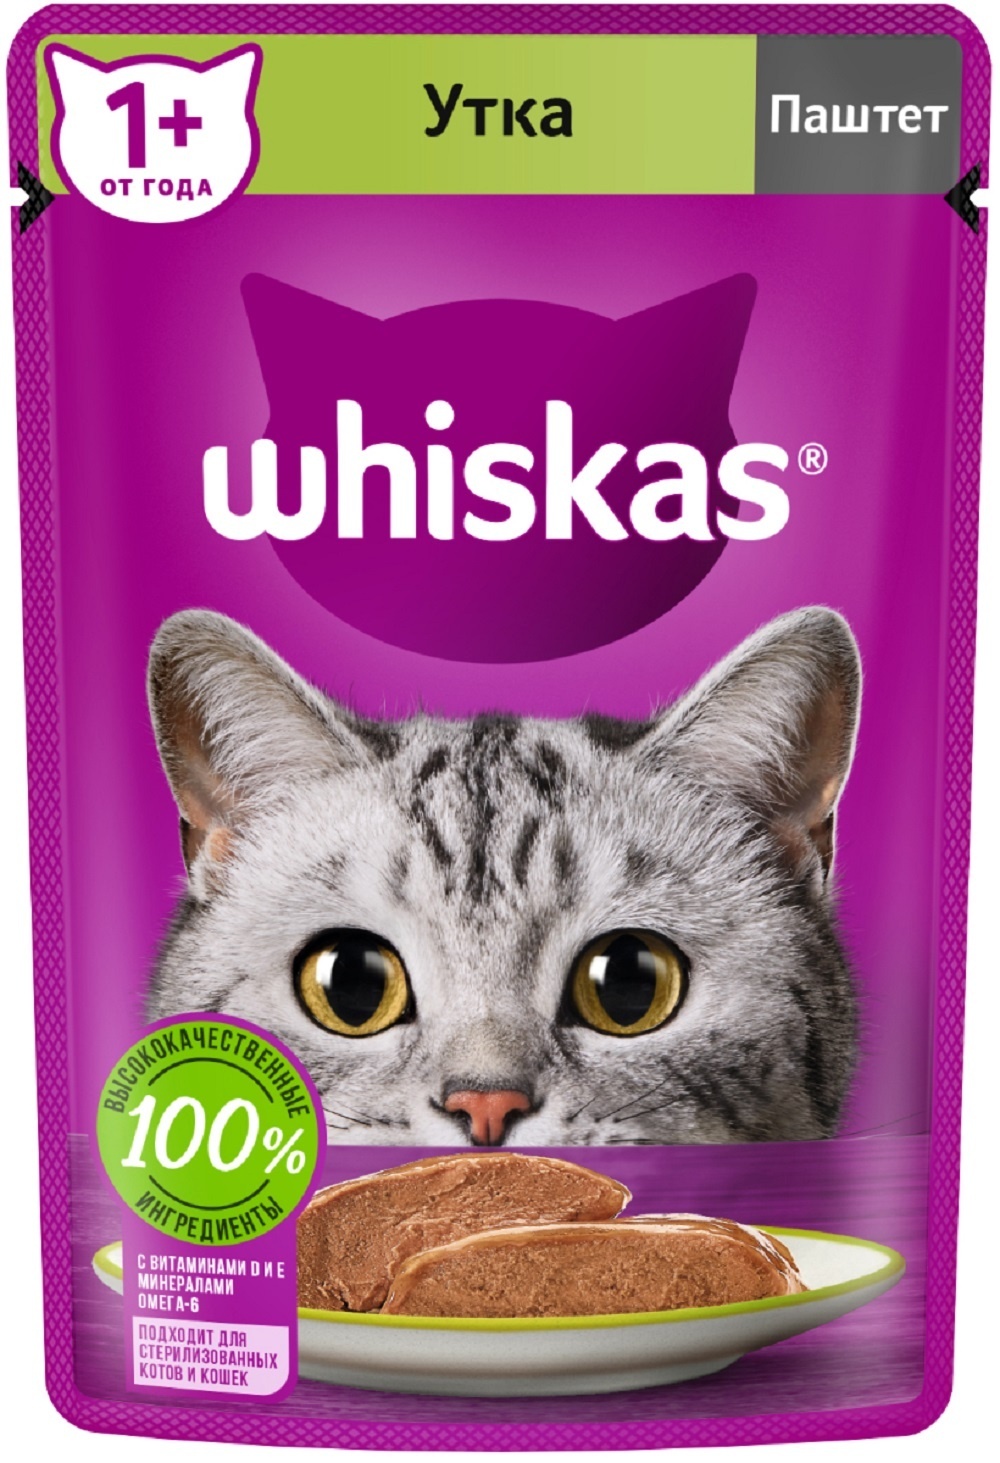 Whiskas Whiskas влажный корм для кошек, паштет с уткой (75 г) whiskas полнорационный влажный корм для кошек паштет с уткой в паучах 75 г